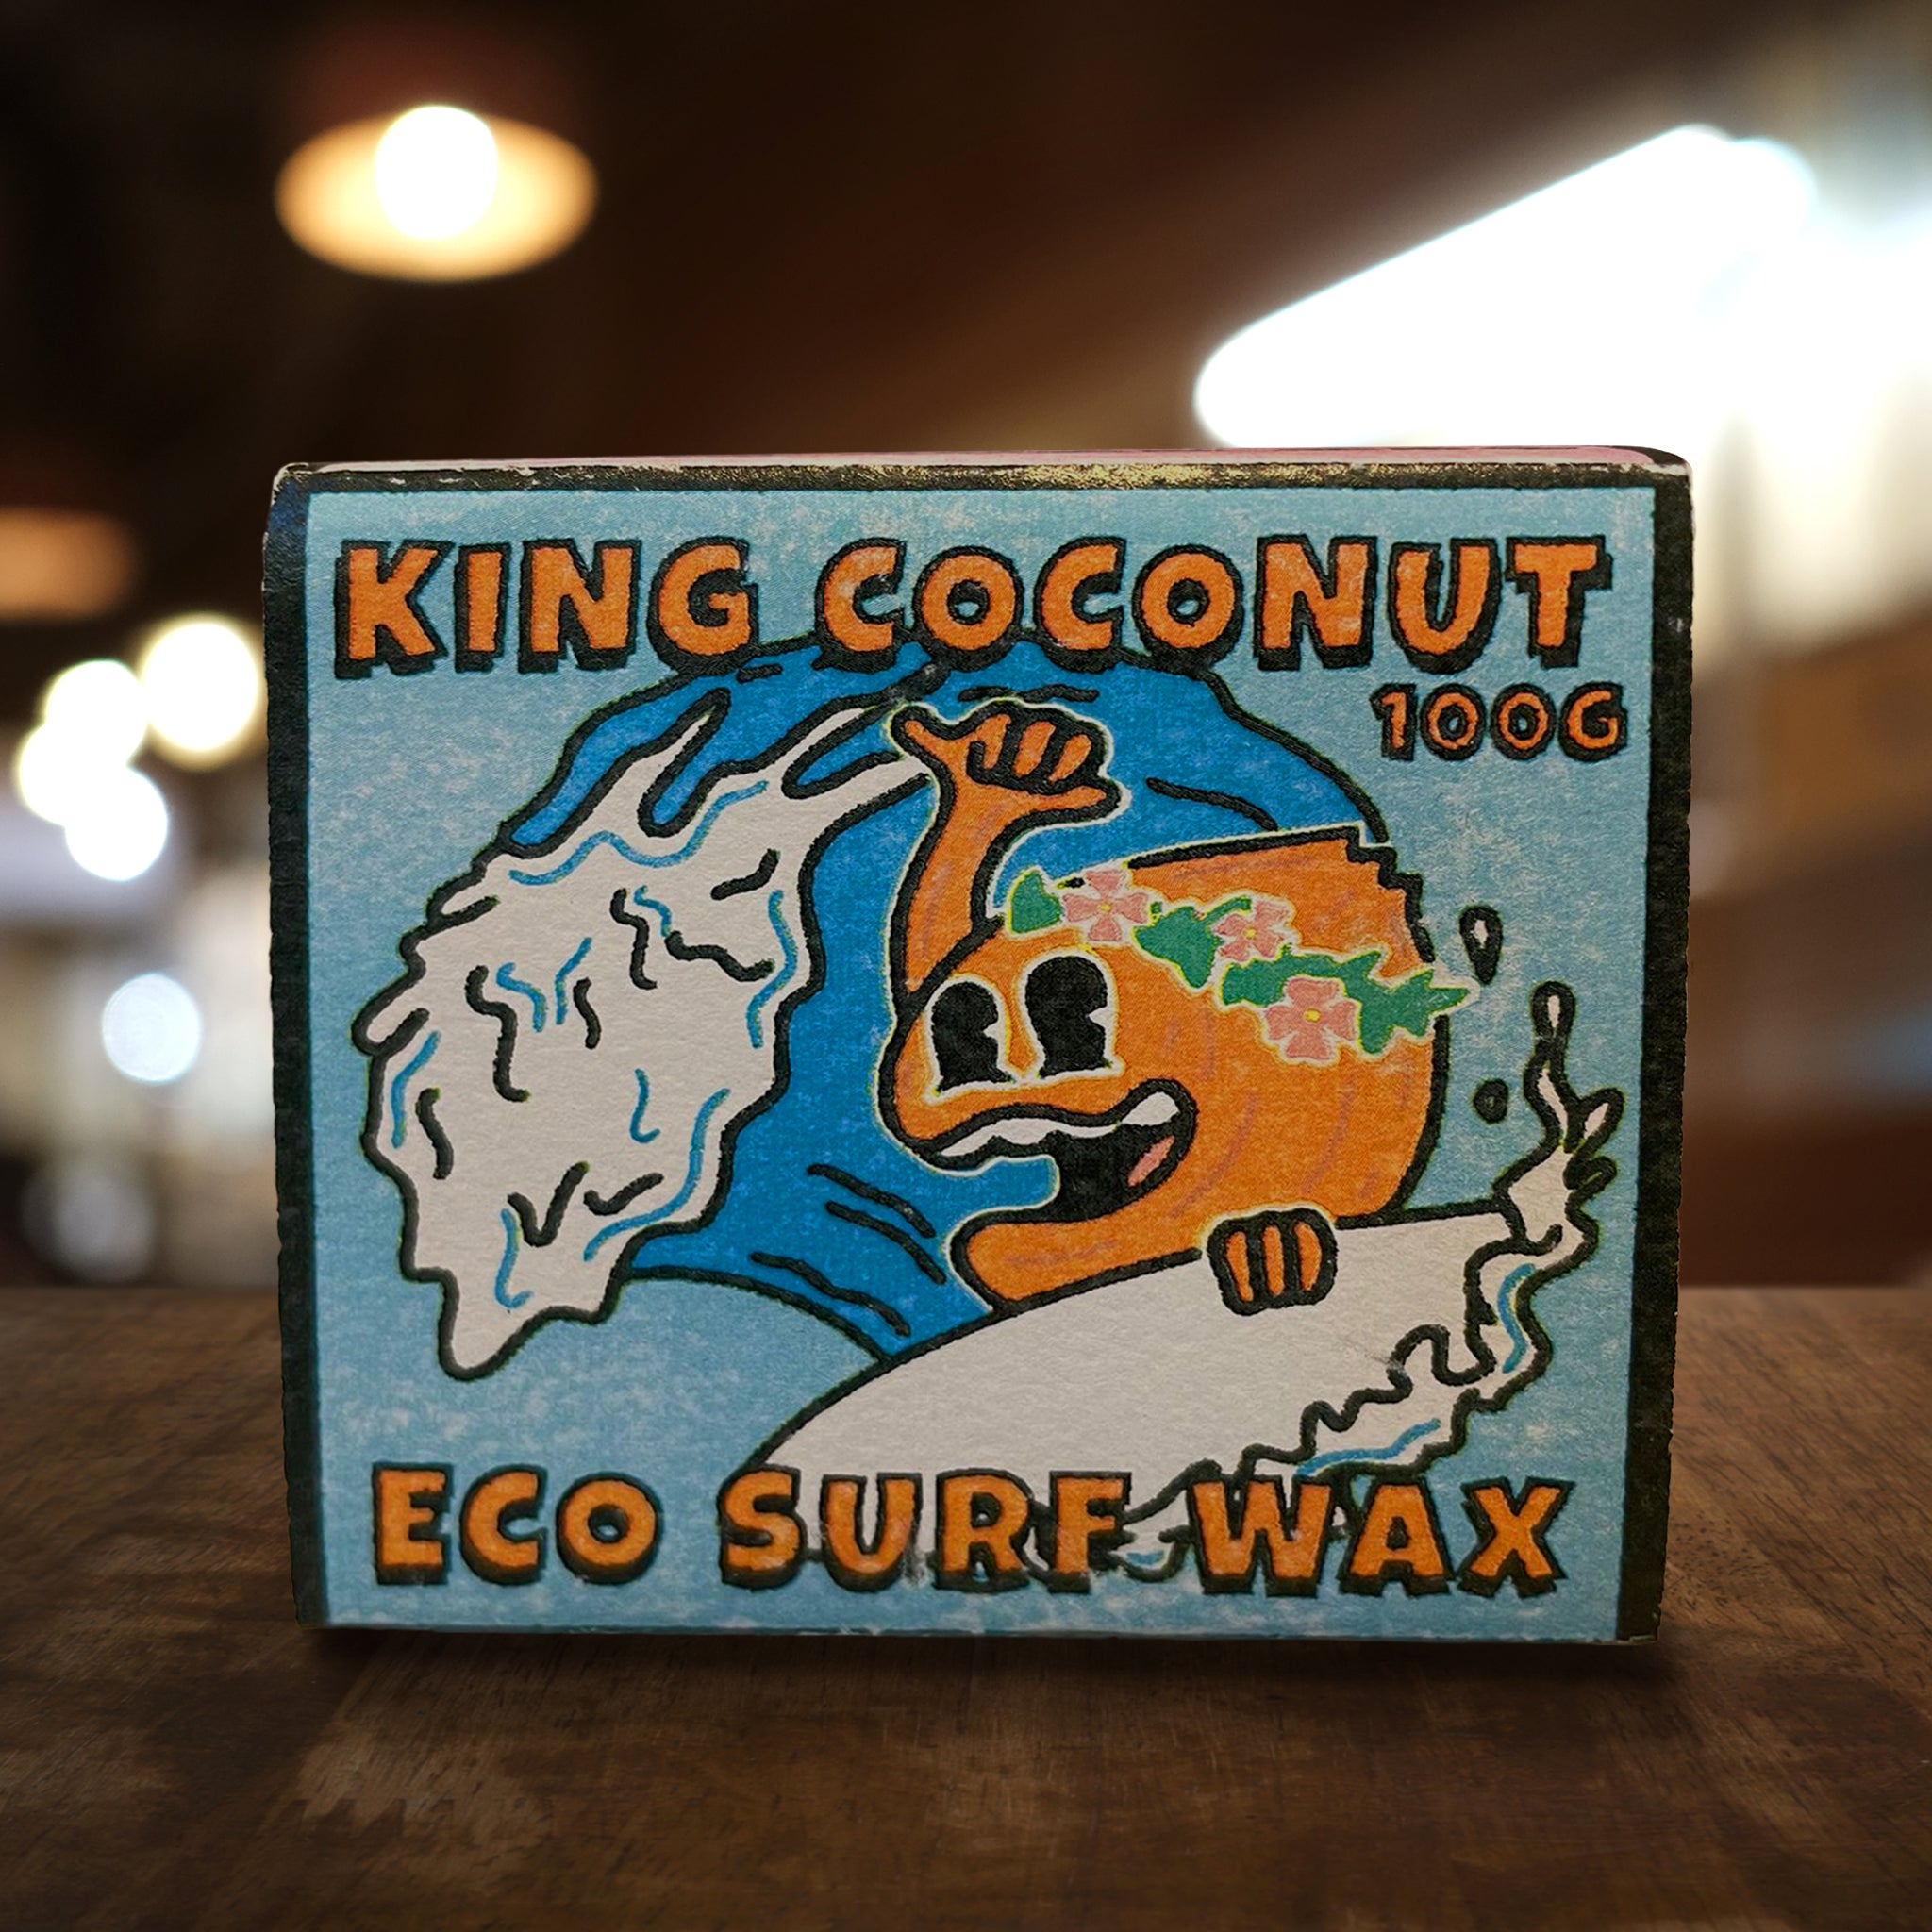 King Coconut Eco Surf Wax